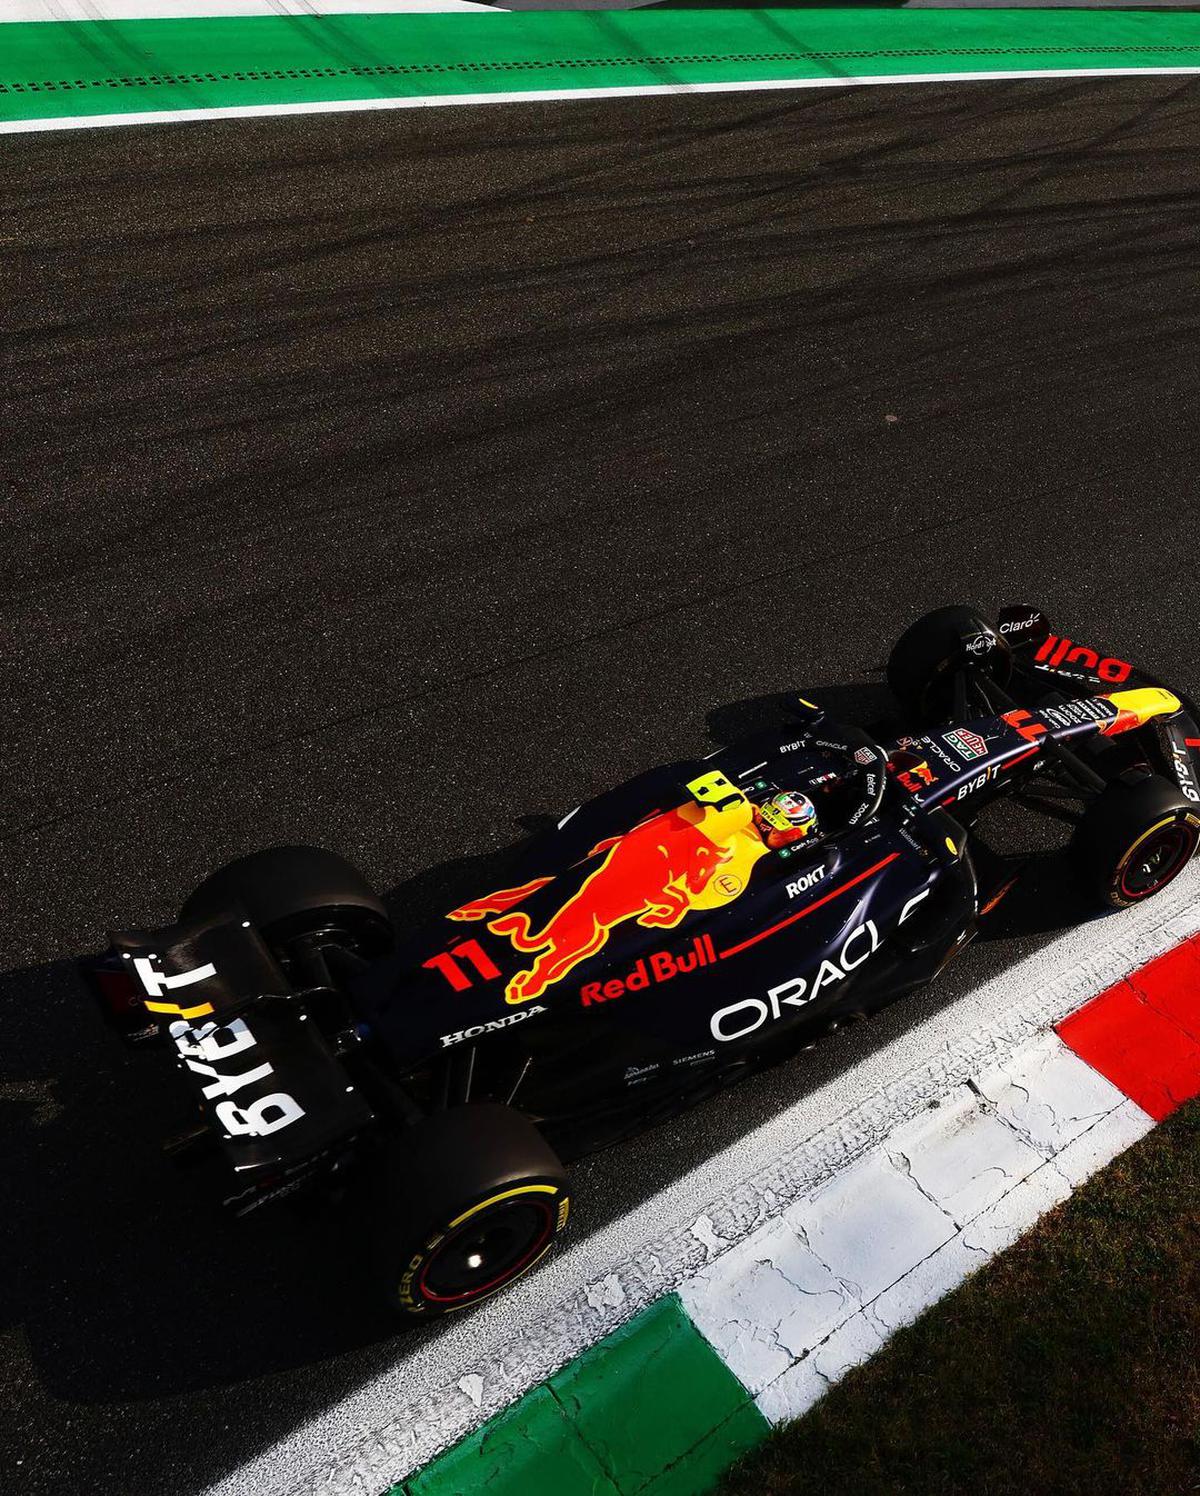 Gran Premio de Italia | Checo Pérez terminó en el quinto lugar en la clasificación en Monza. Crédito: instagram @schecoperez.